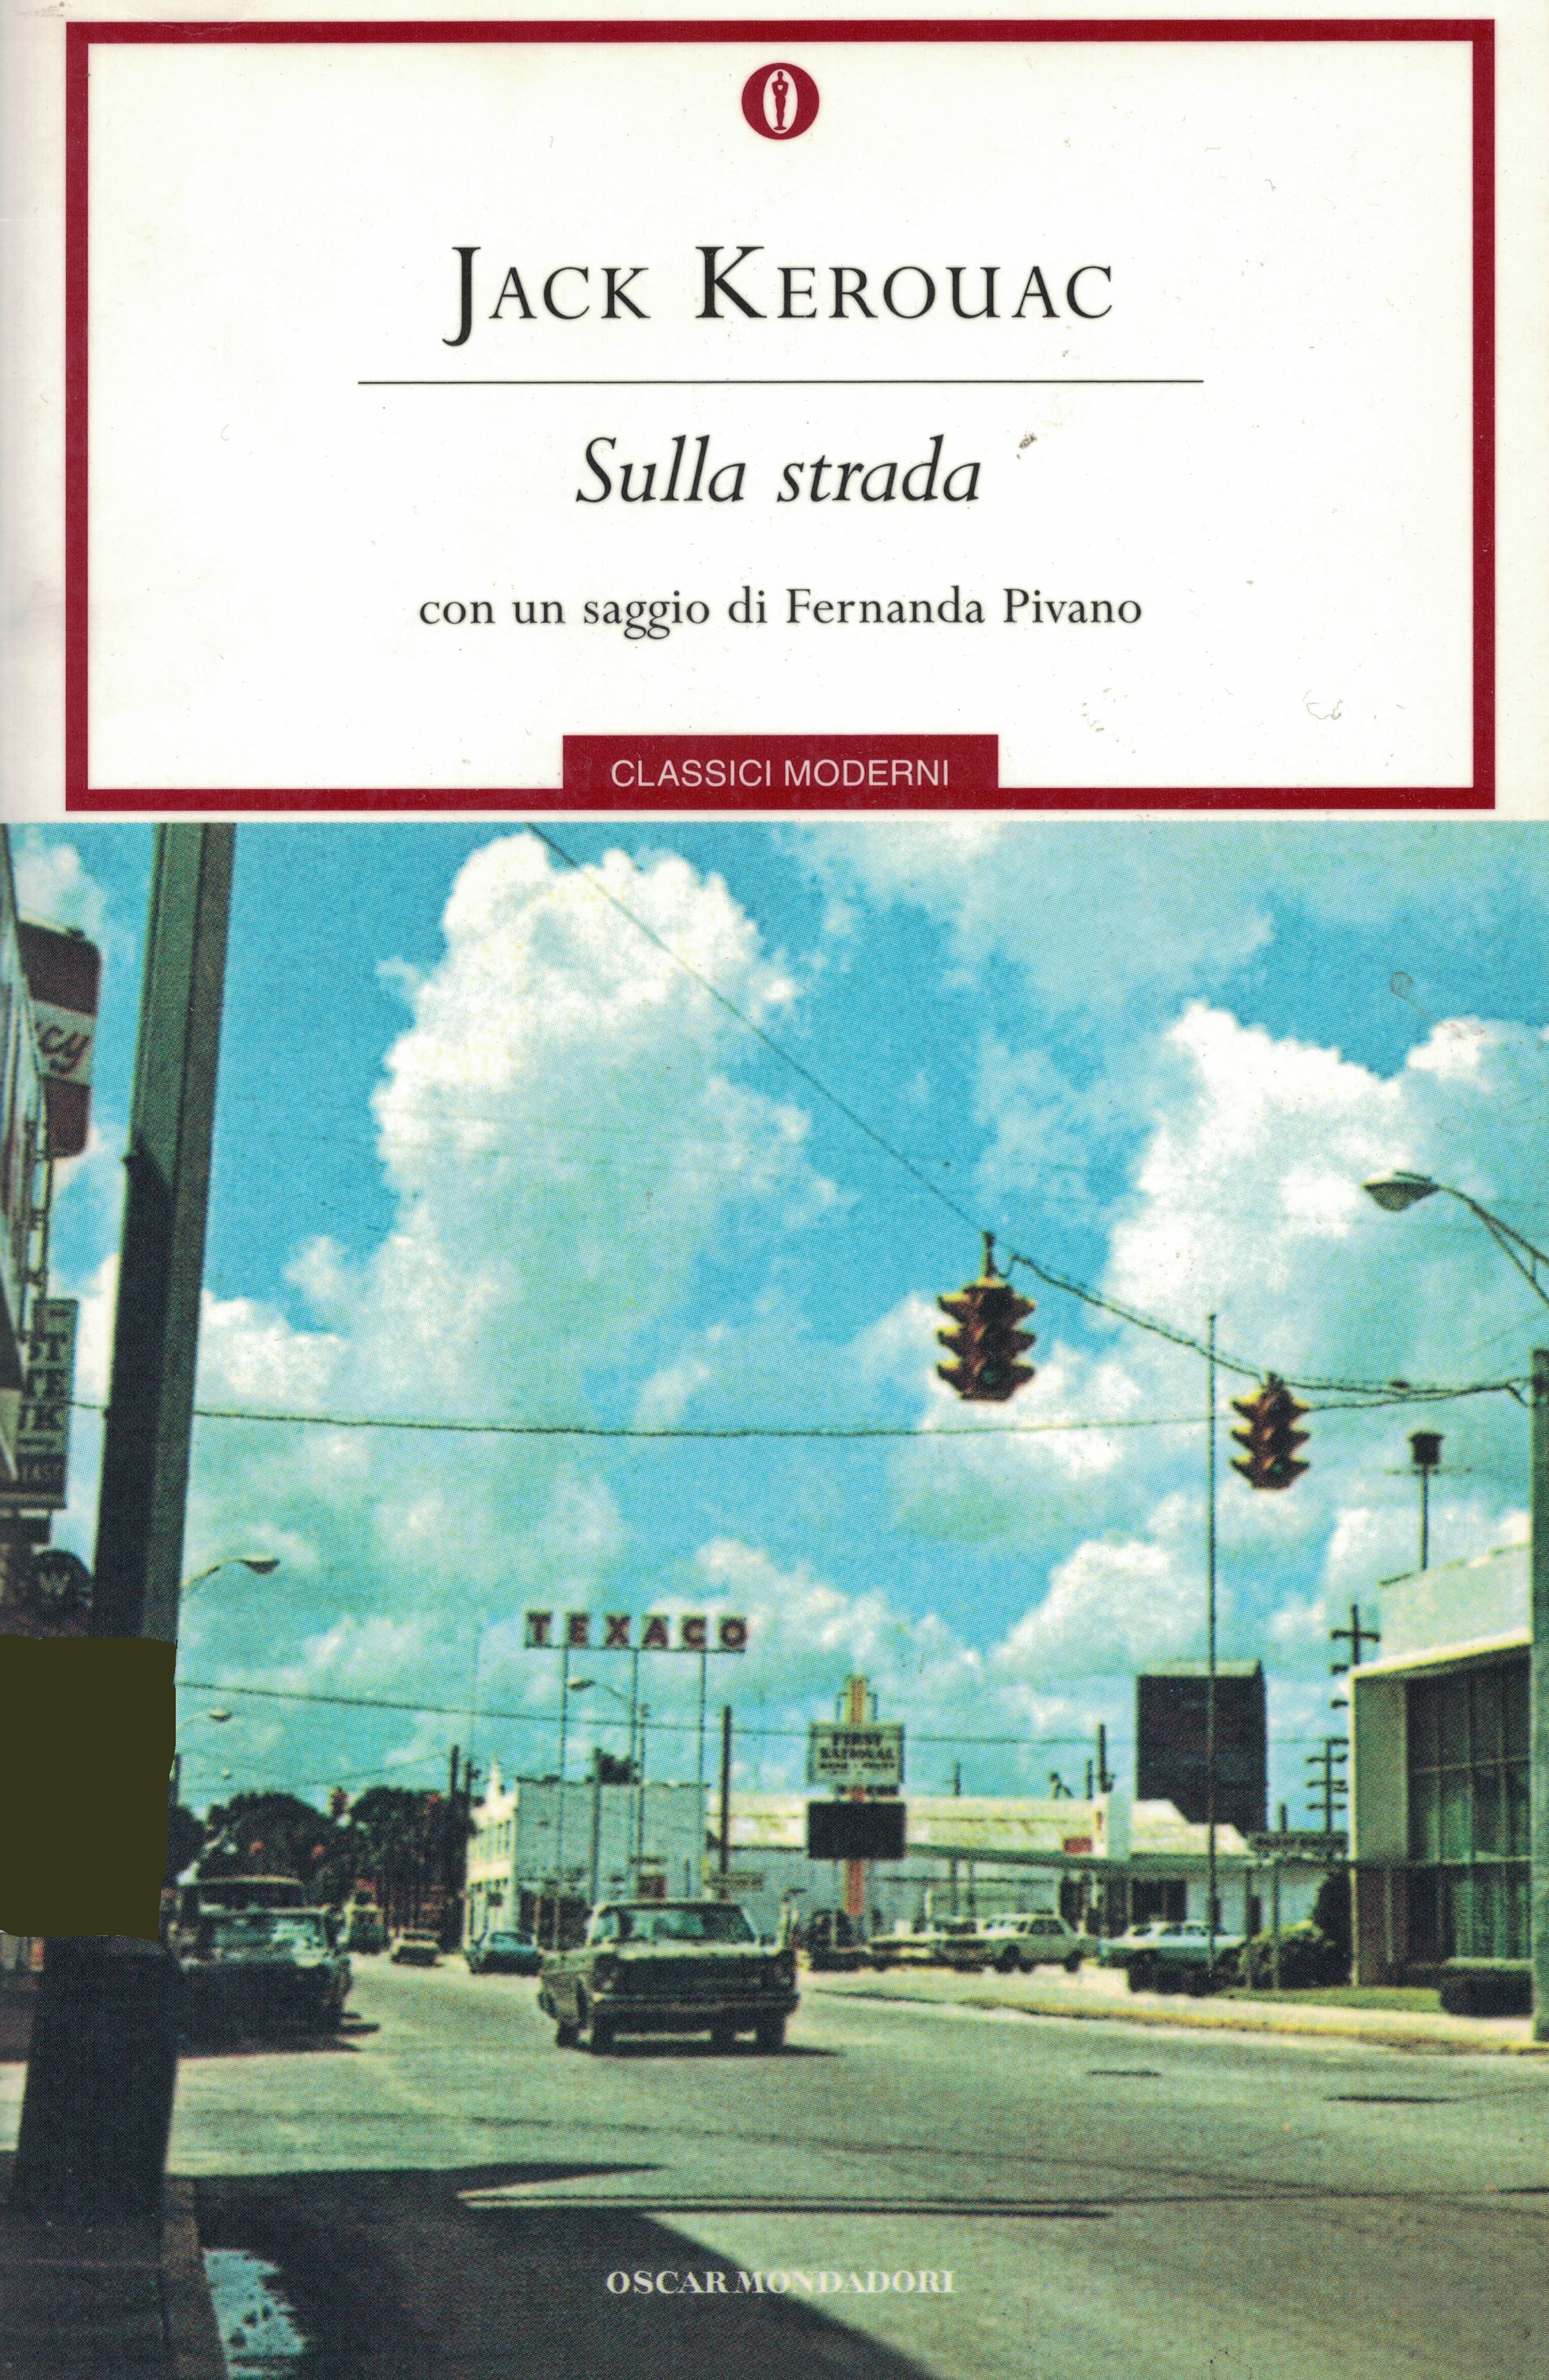 Jack Kerouac: SULLA STRADA. Traduzione di Marisa Caramella. Con un saggio  di Fernanda Pivano. – Biblioteca Liceo Gullace Talotta